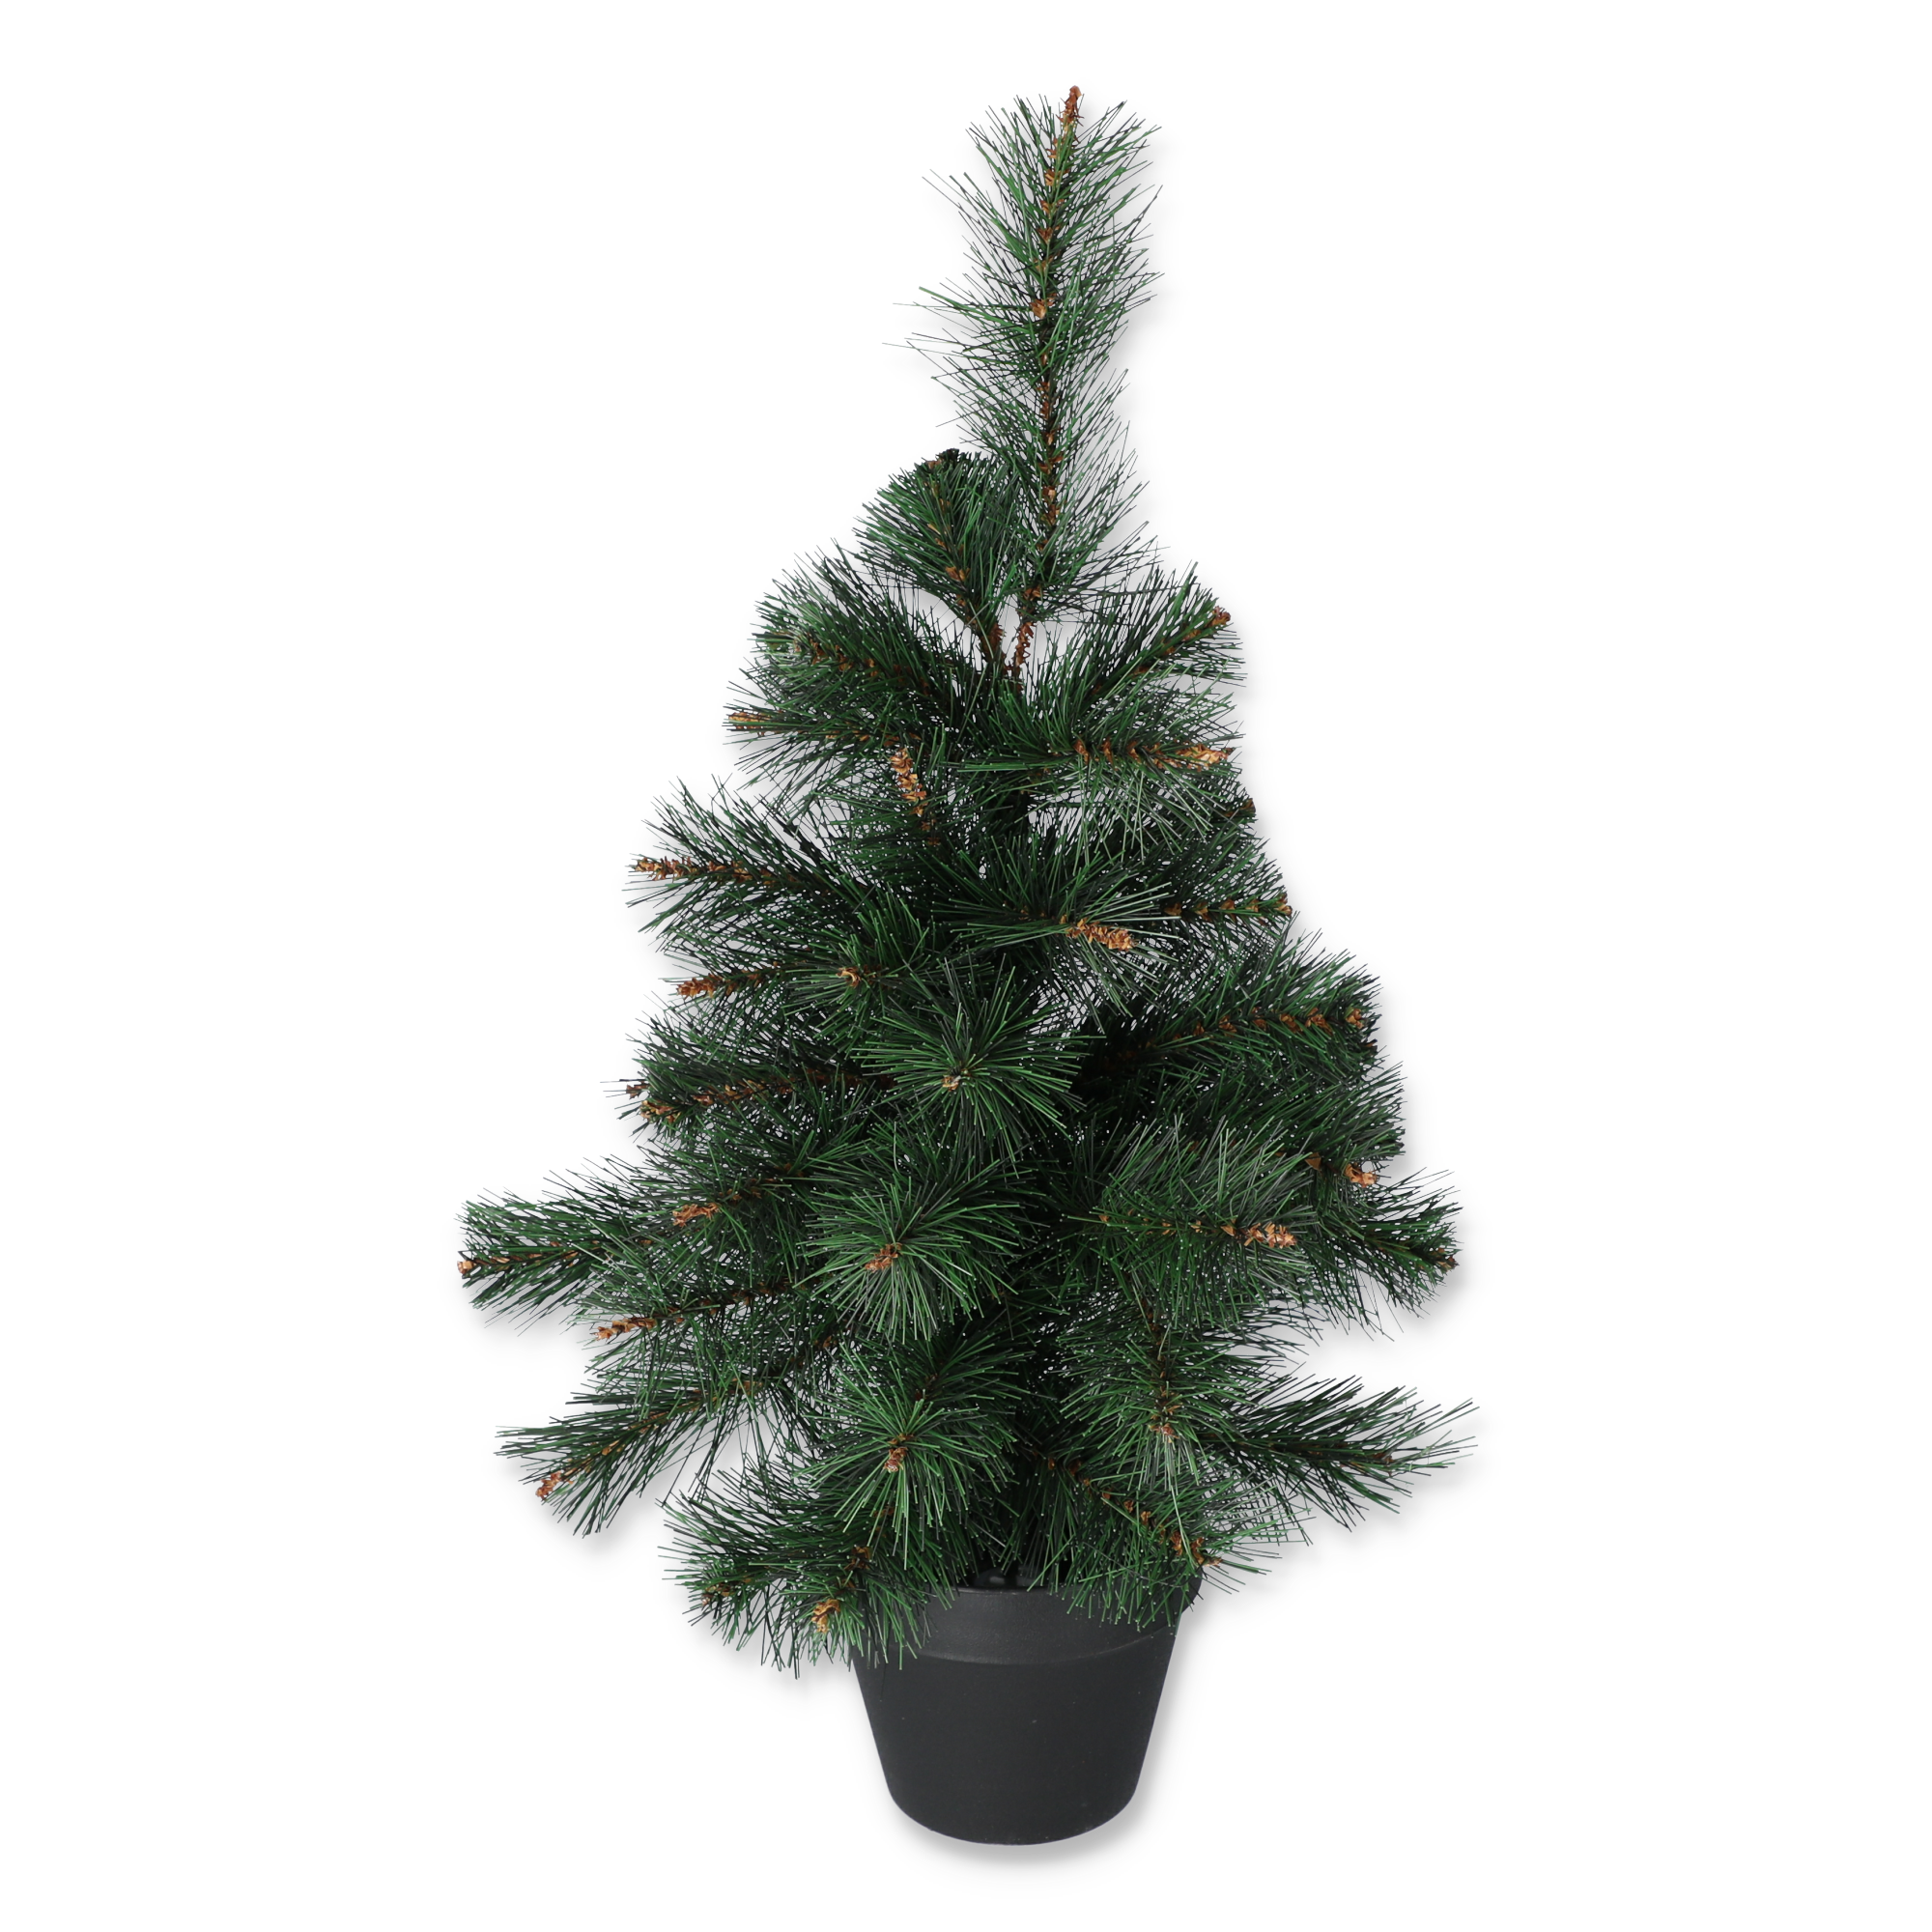 Künstlicher Weihnachtsbaum im Topf grün 55 cm + product picture